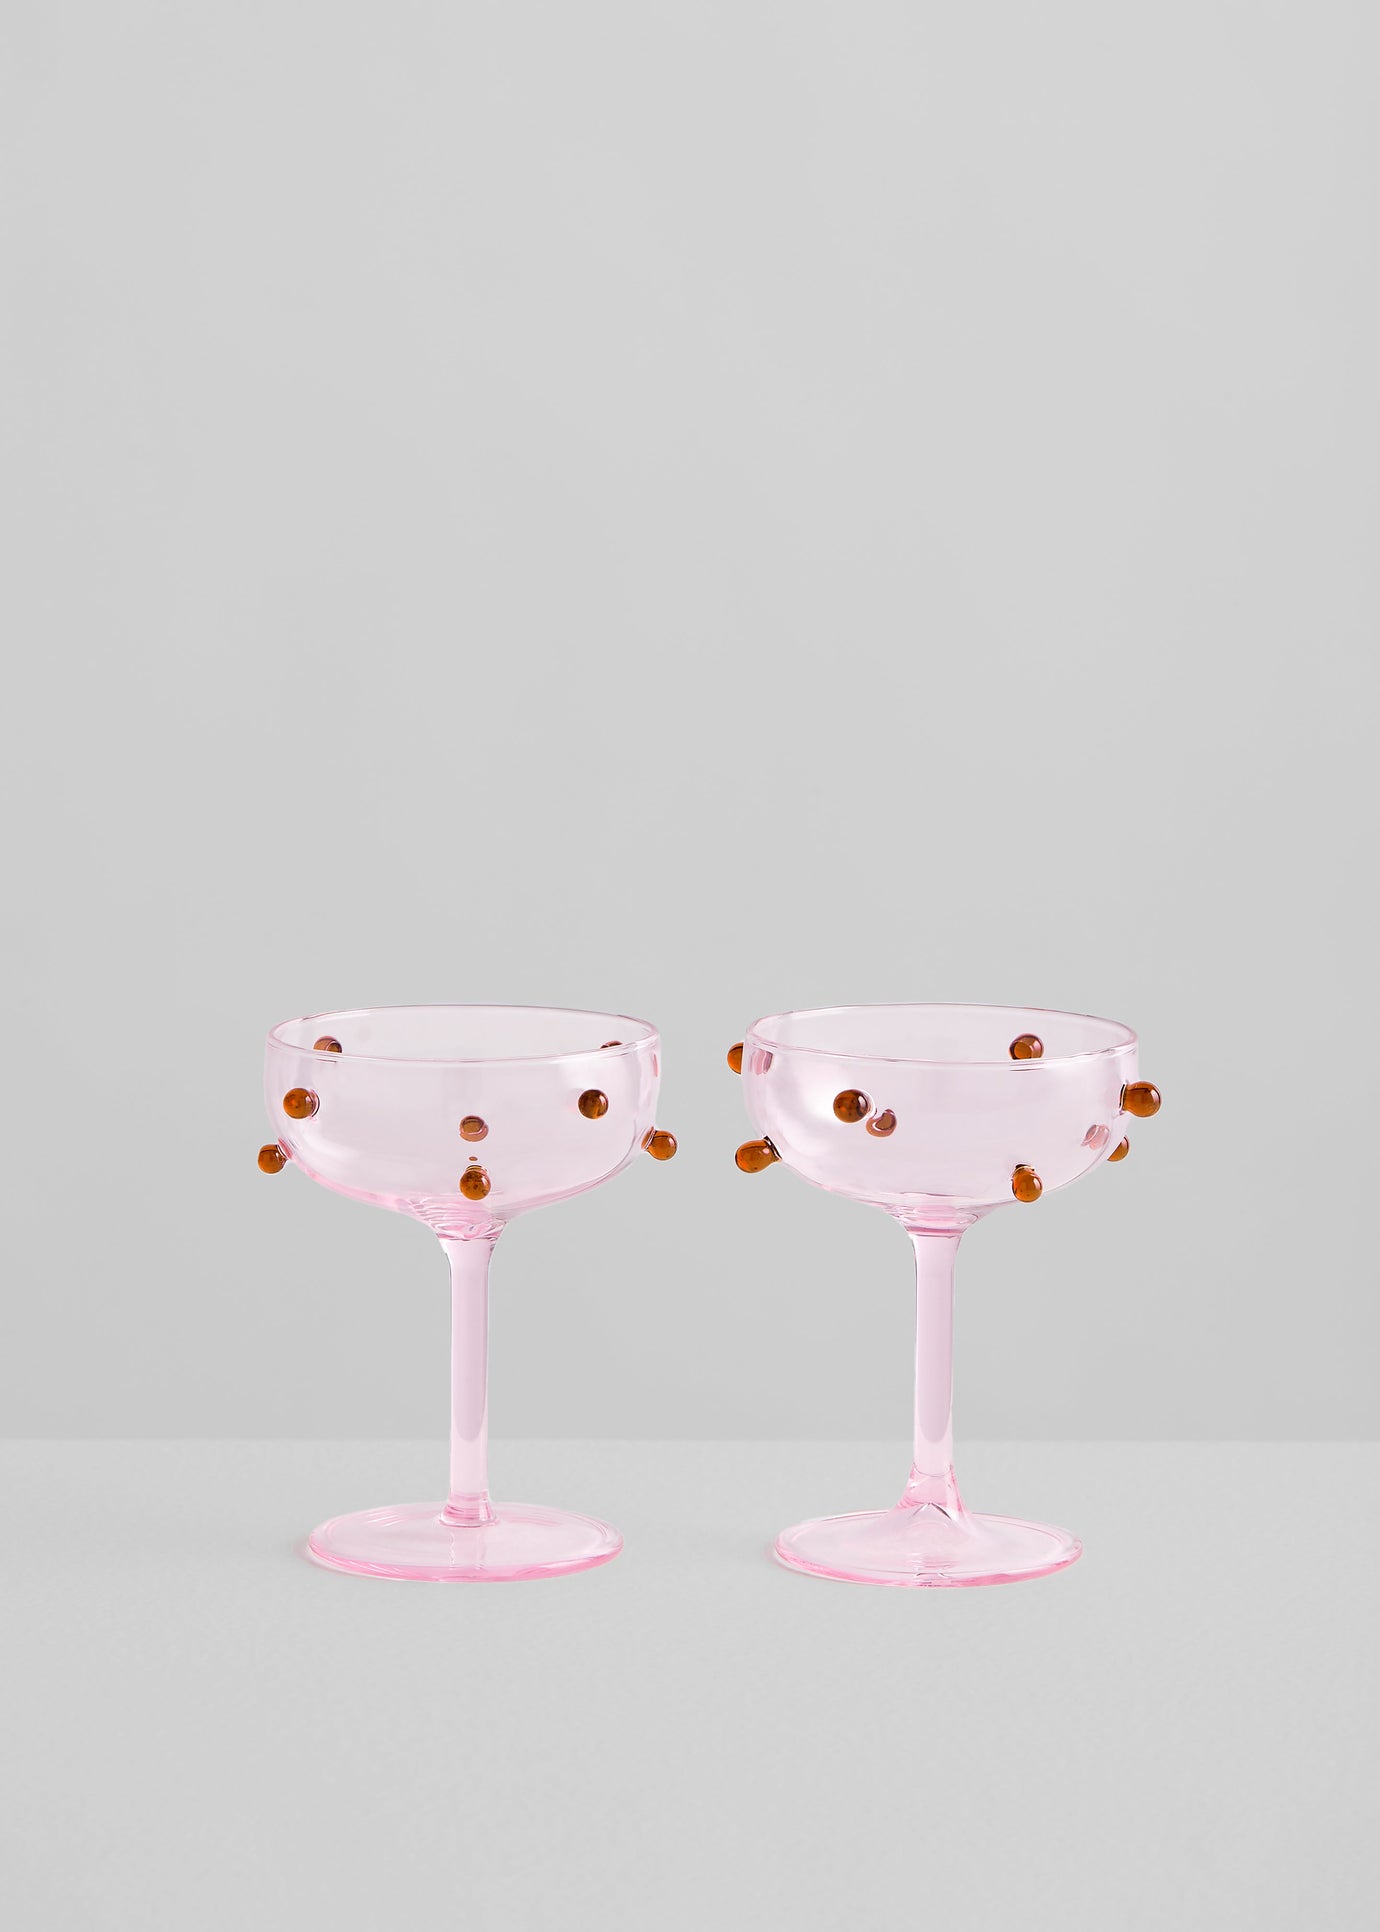 Maison Balzac 2 Champagne Coupes - Pink & Amber